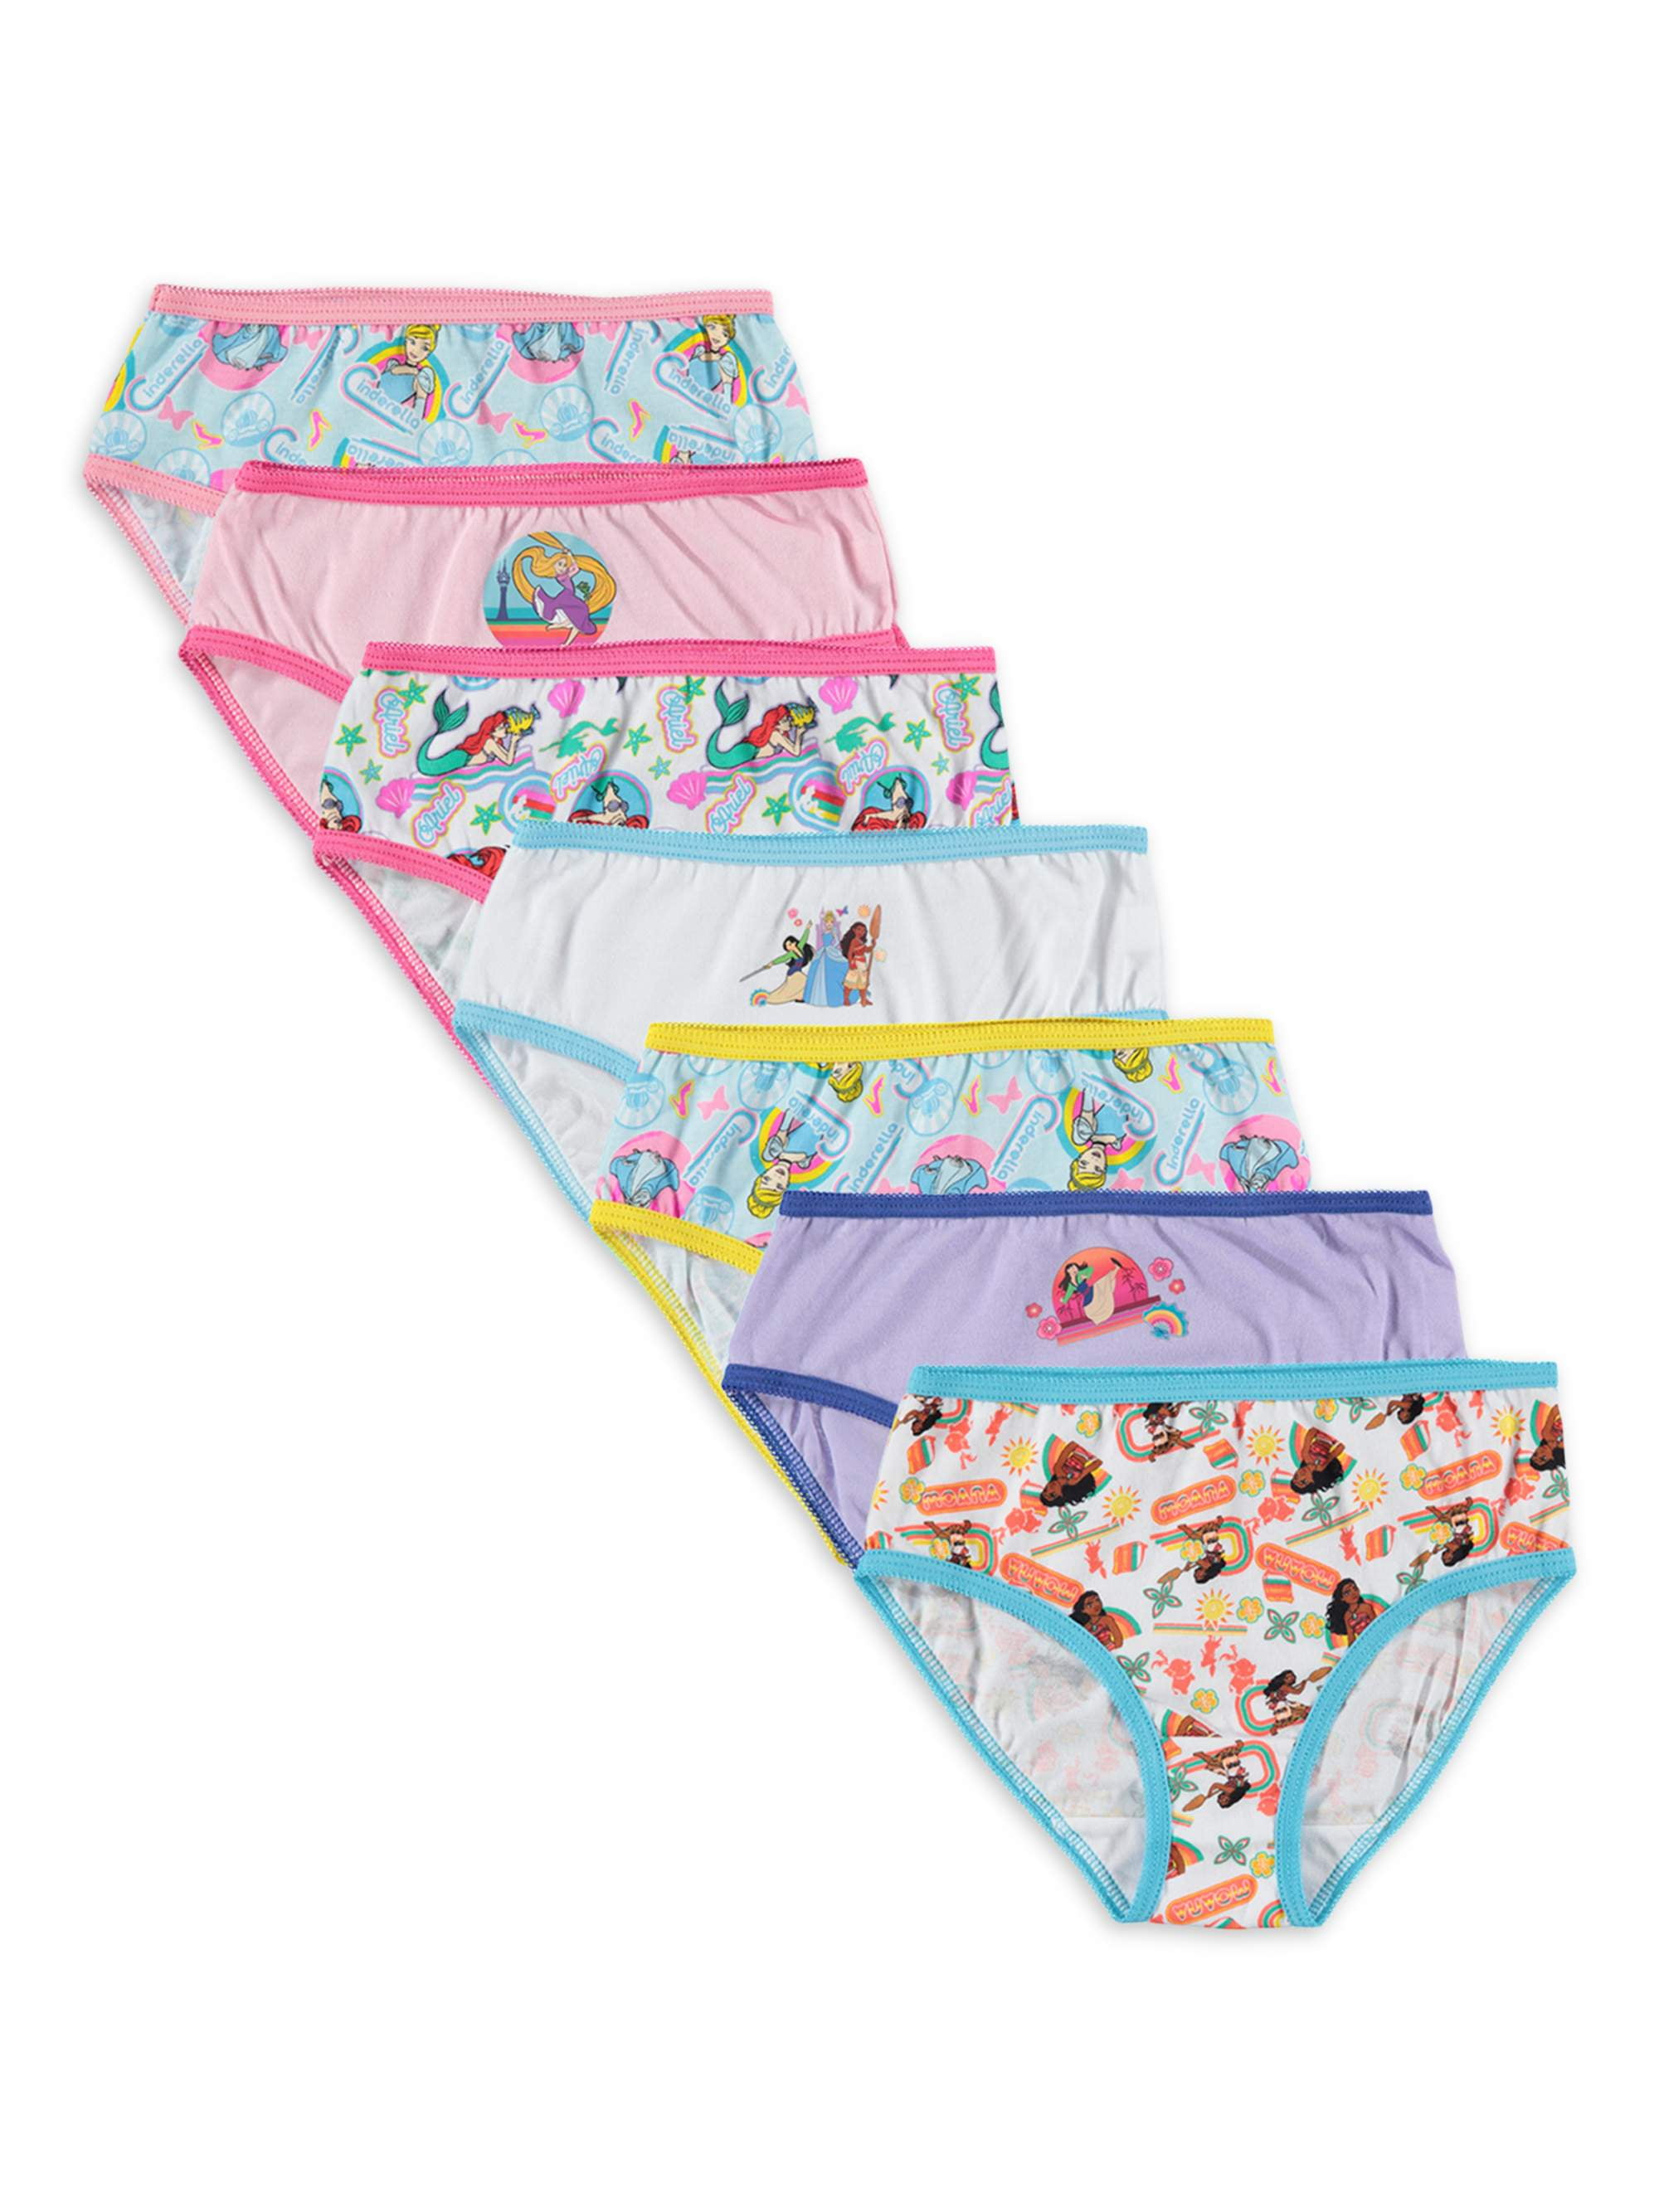 Disney Princess Girls Briefs Underwear 7-Pack, Sizes